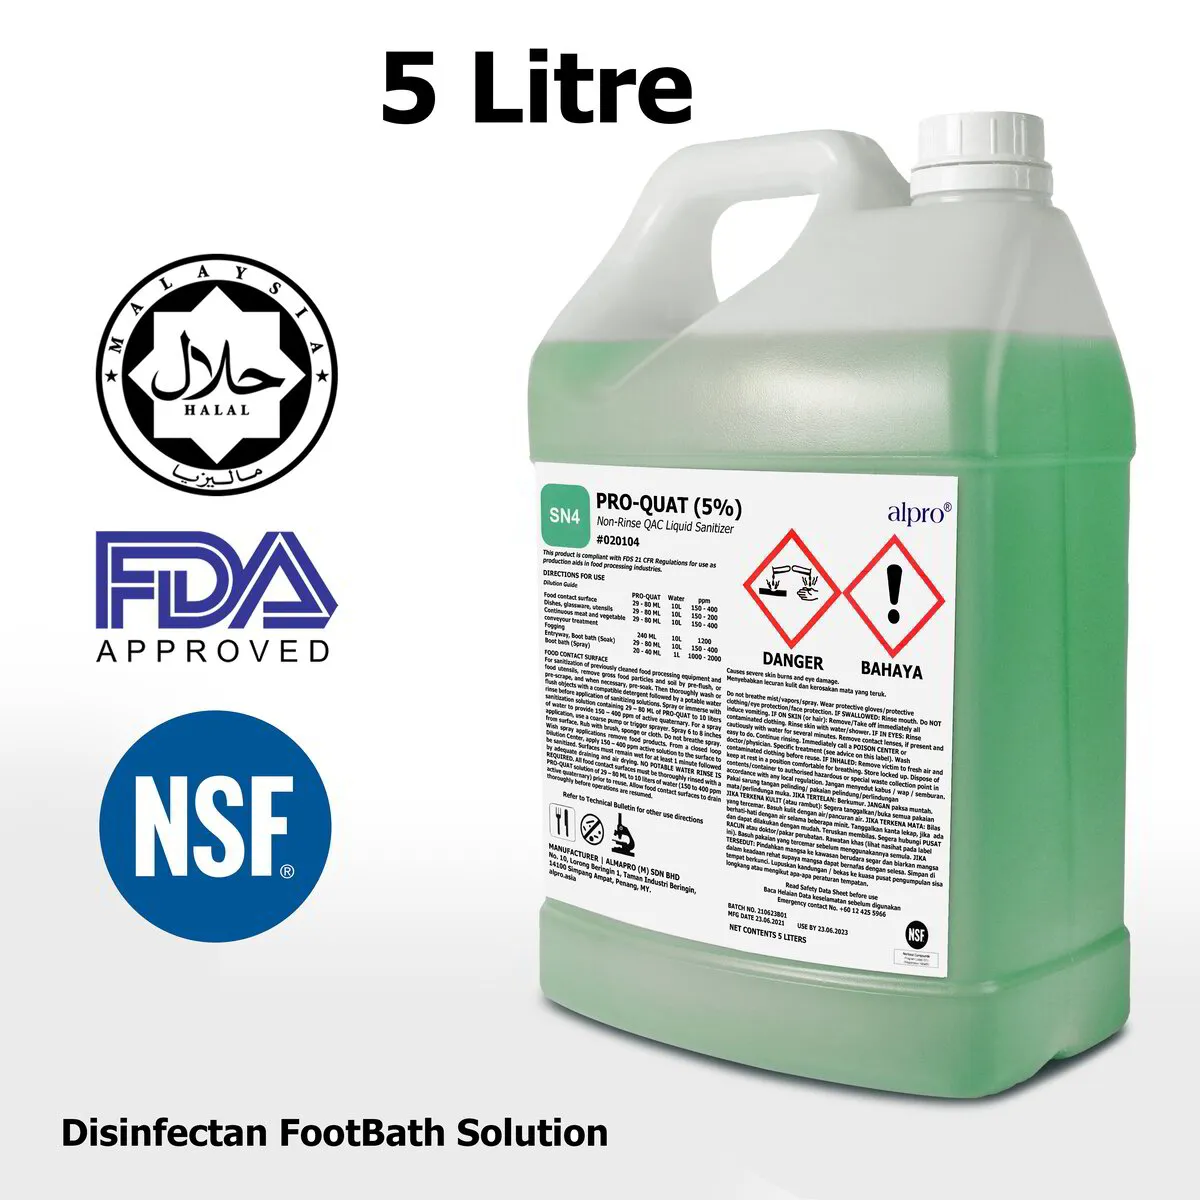 Pro-Quat 5% Disinfectant Solution (5Litre)